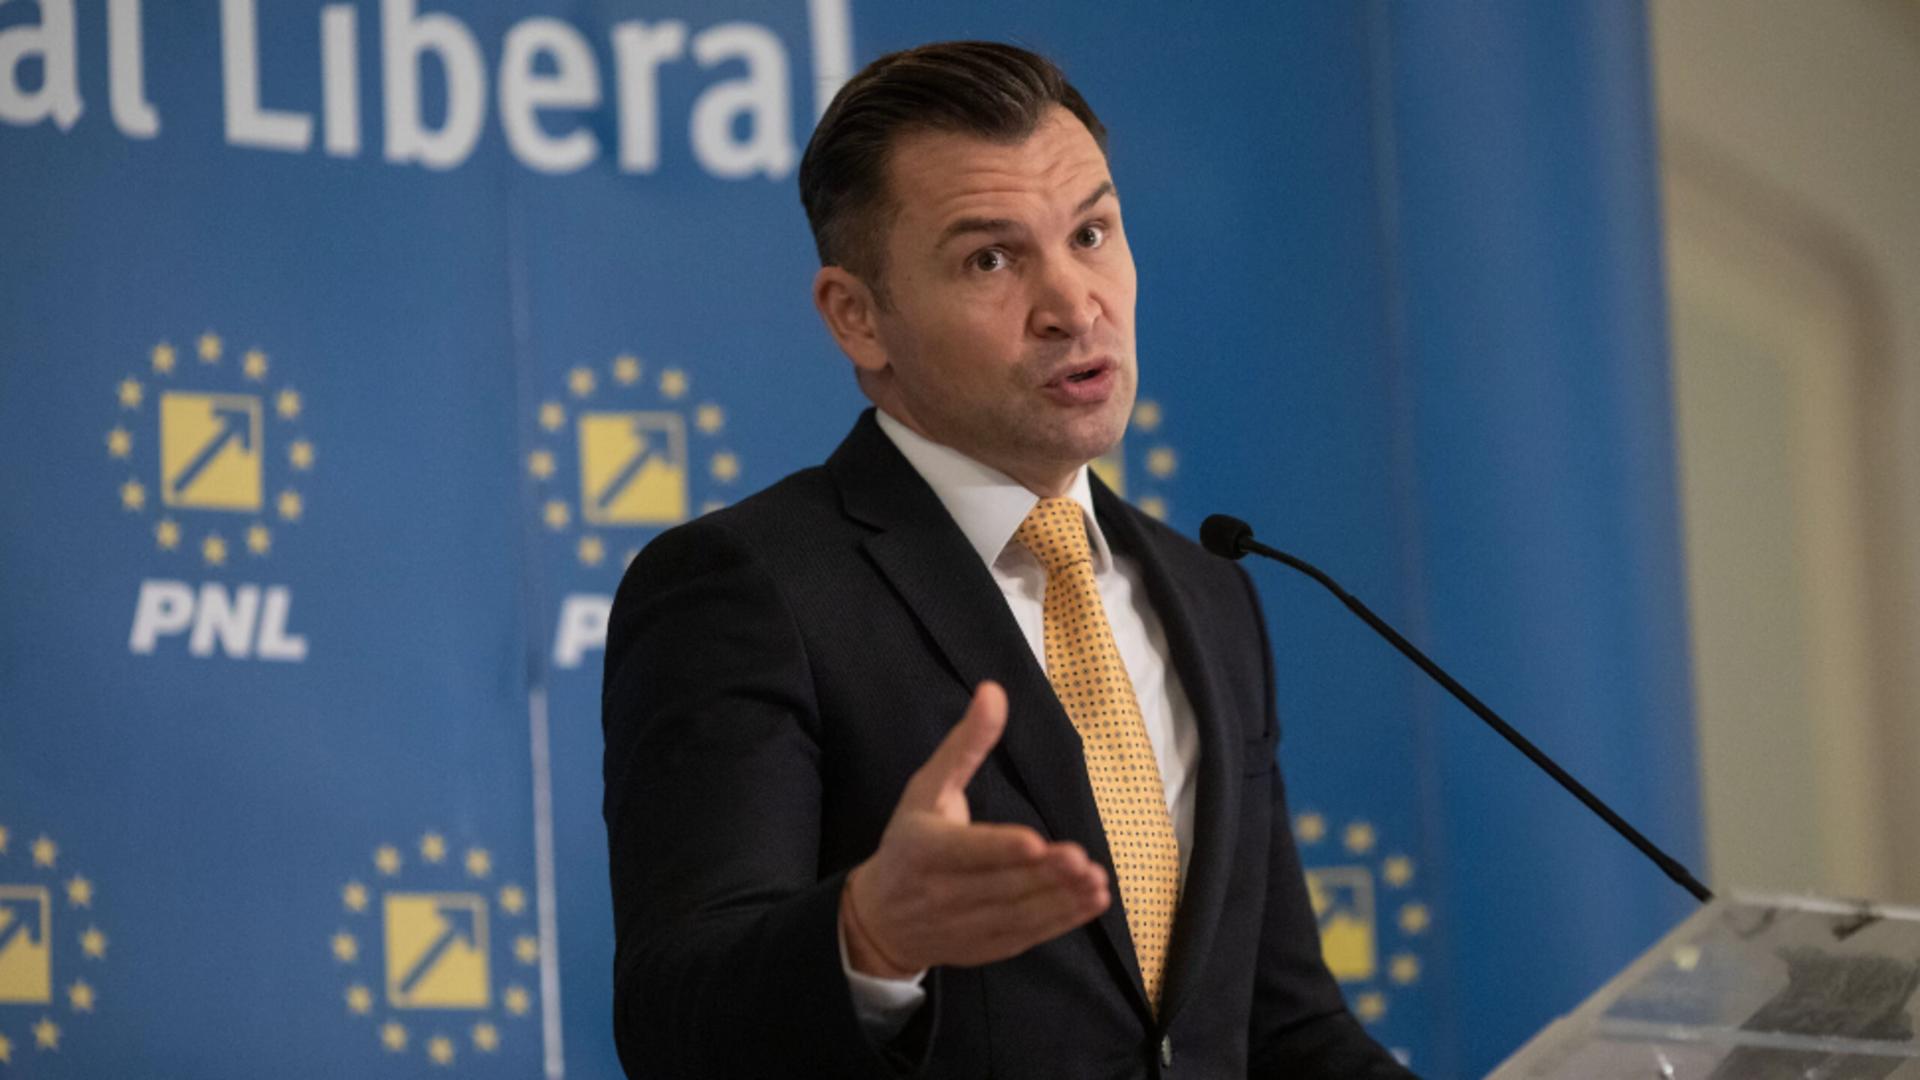 Alegeri comasate - Ionuț Stroe: „Oamenii vor simplificarea procesului electoral, alegeri civilizate și economisirea banului public”